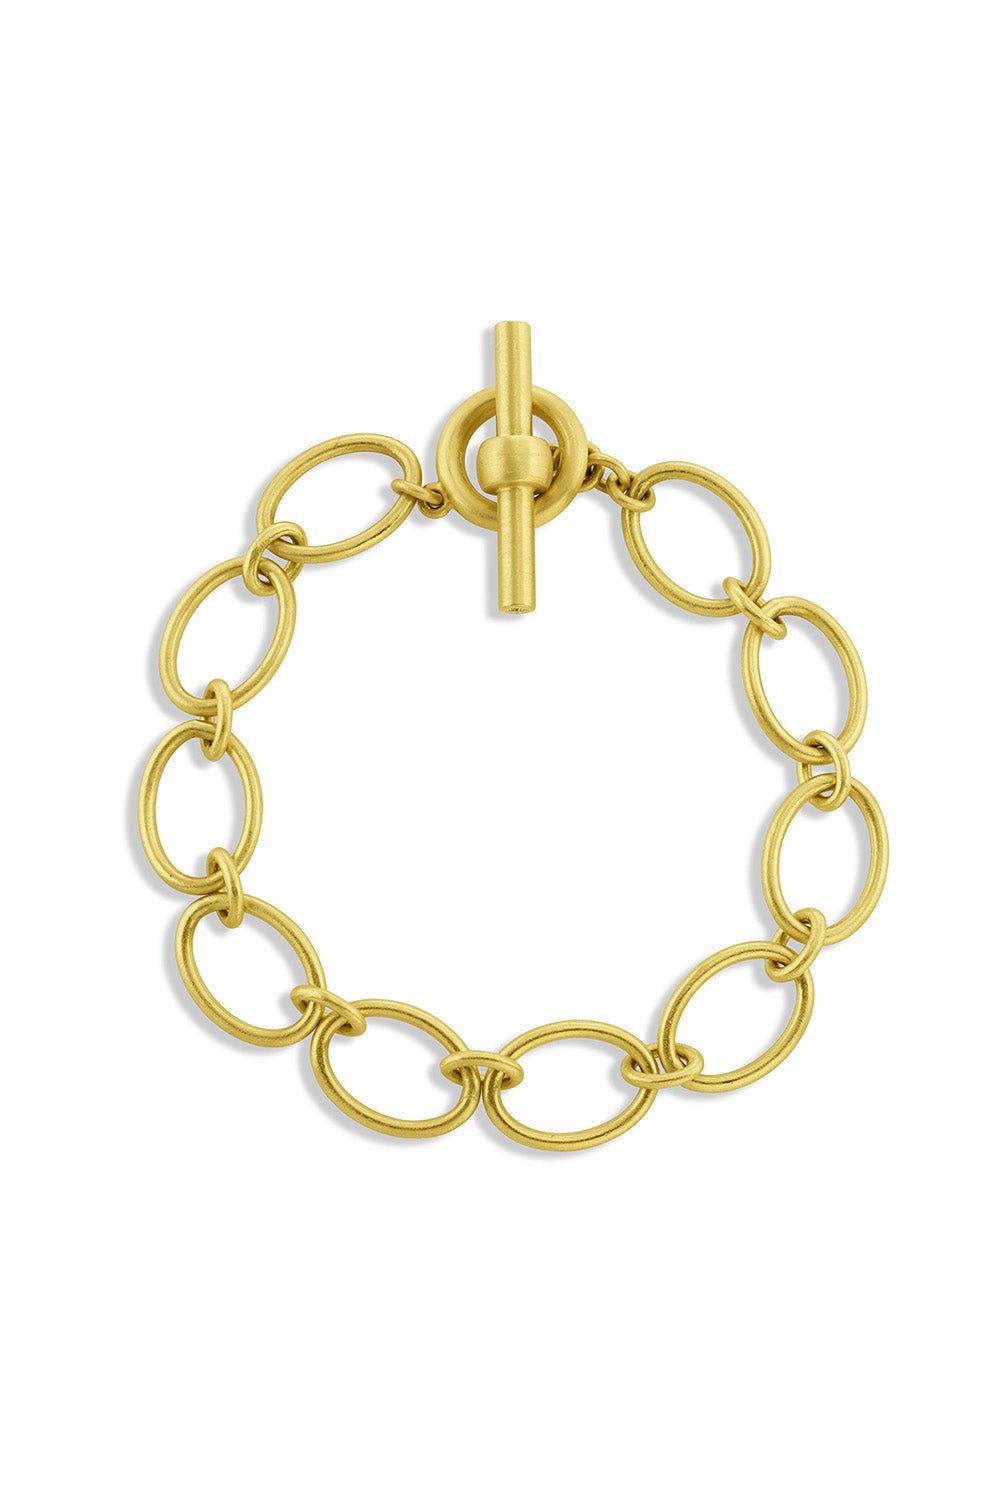 LEIGH MAXWELL-Handmade Link Bracelet-YELLOW GOLD